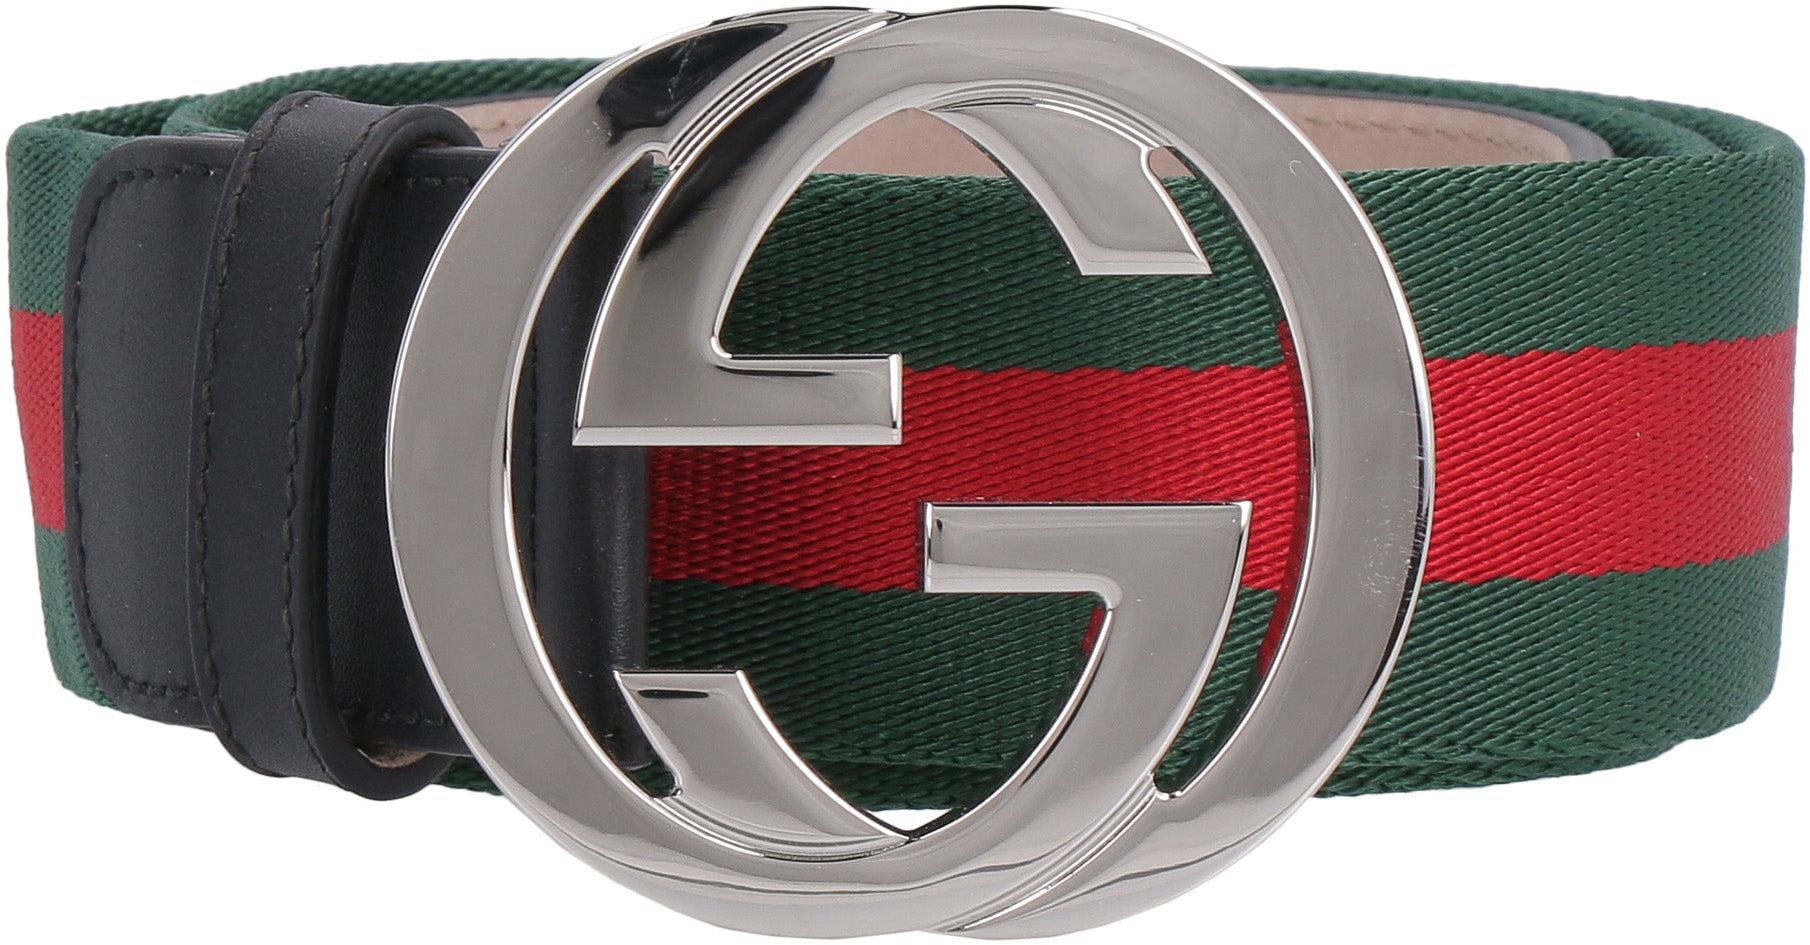 gucci belt price in sri lanka